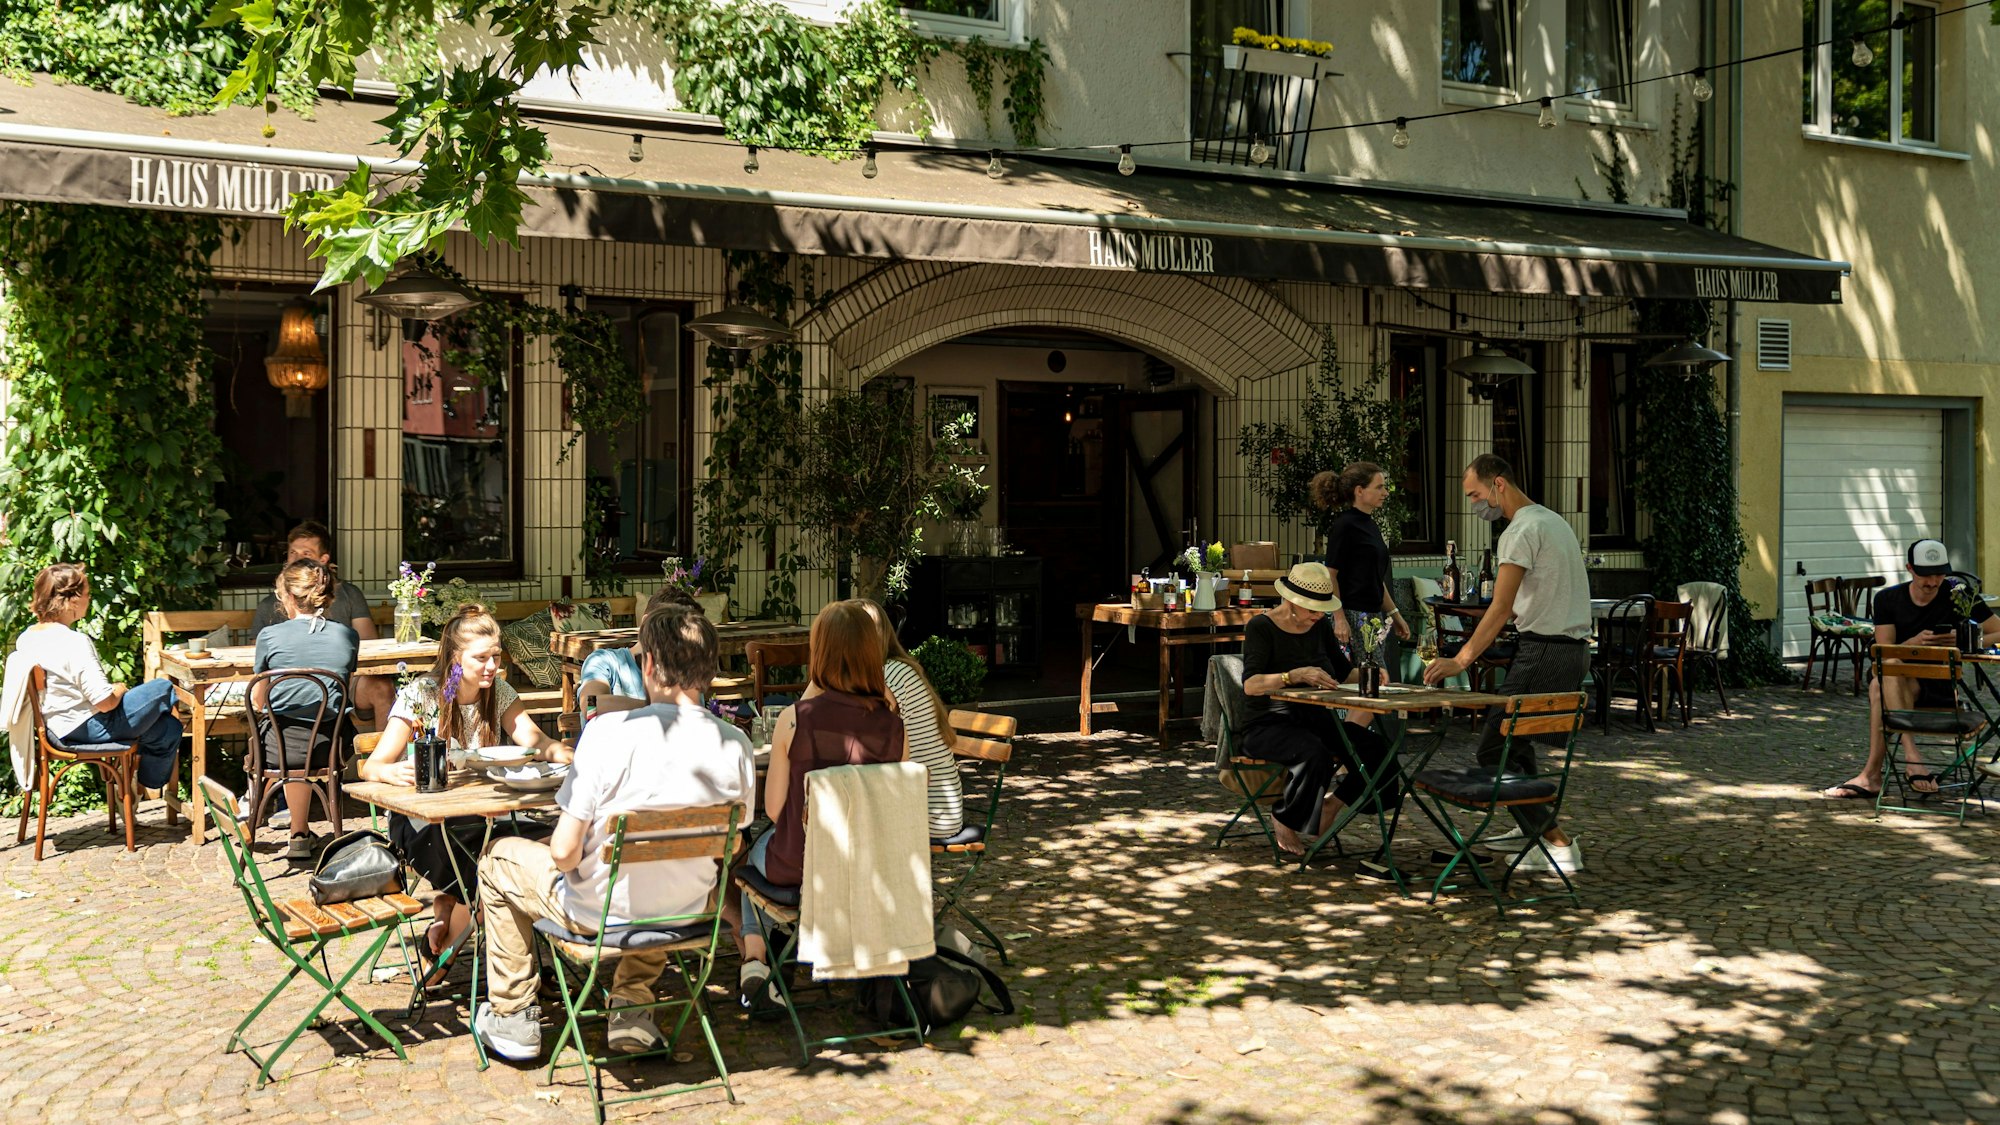 Das Restaurant Haus Müller in der Kölner Südstadt, Blick auf den Außenbereich mit Gästen